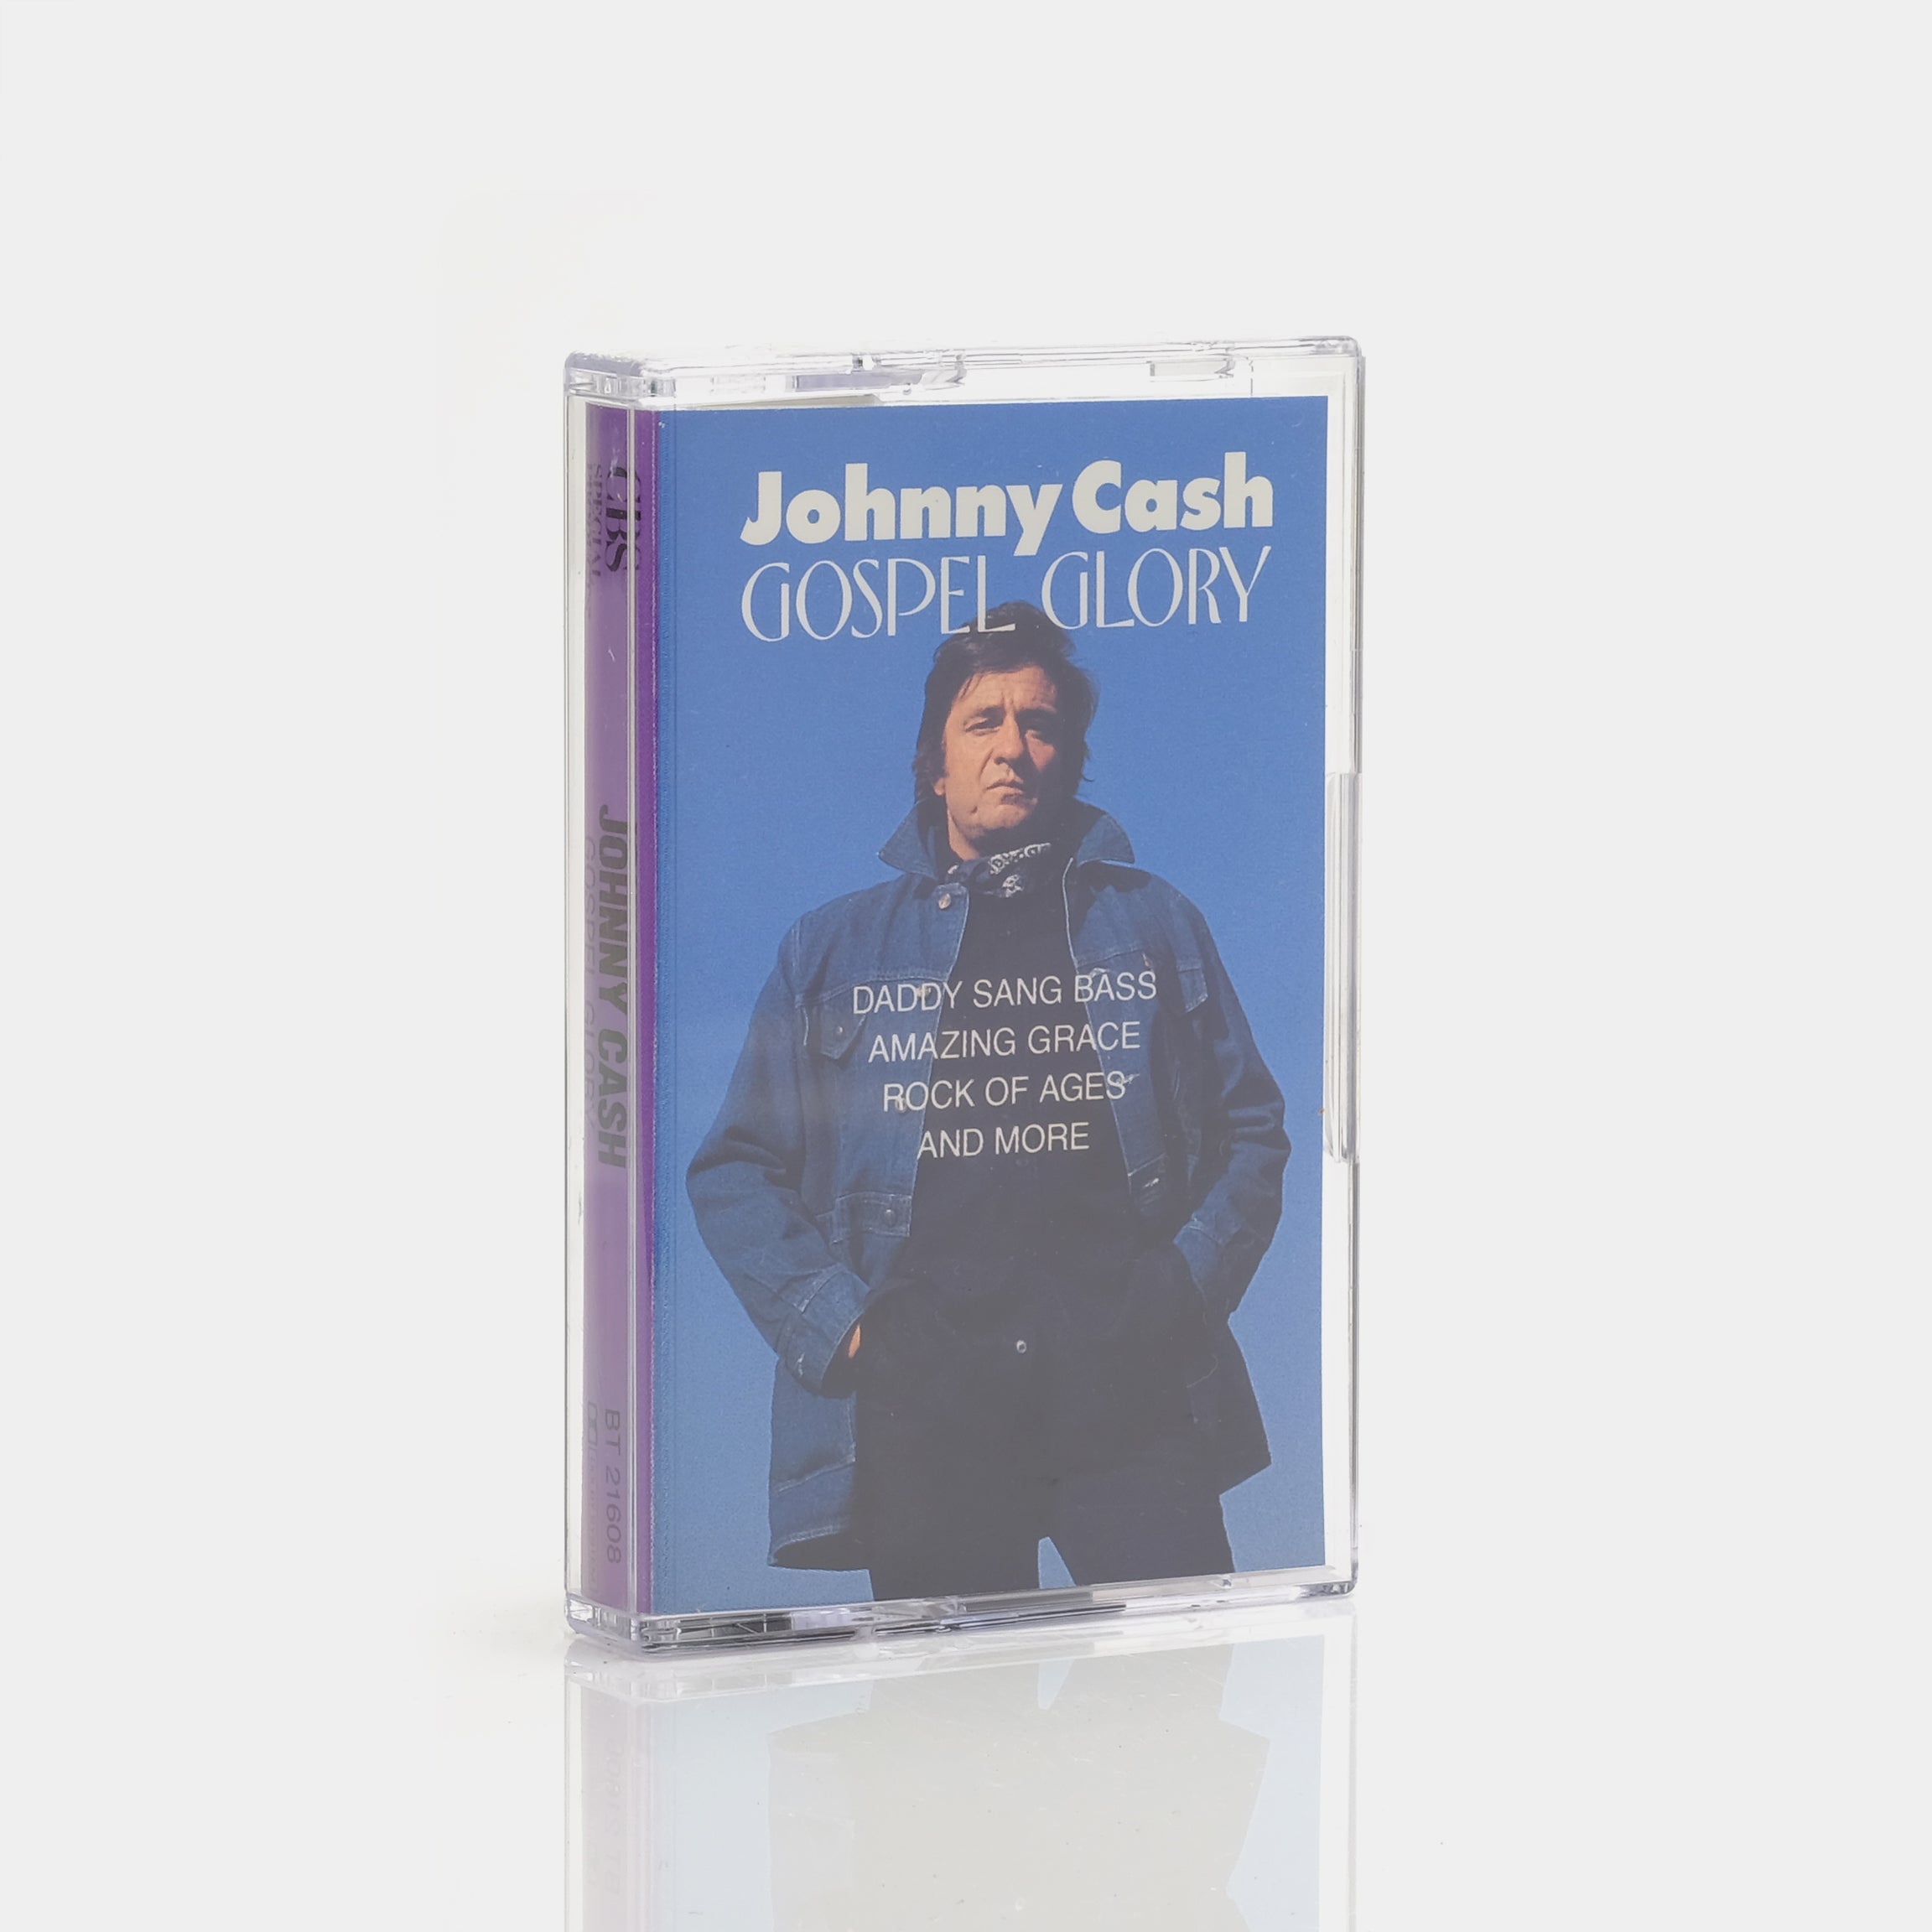 Johnny Cash - Gospel Glory Cassette Tape